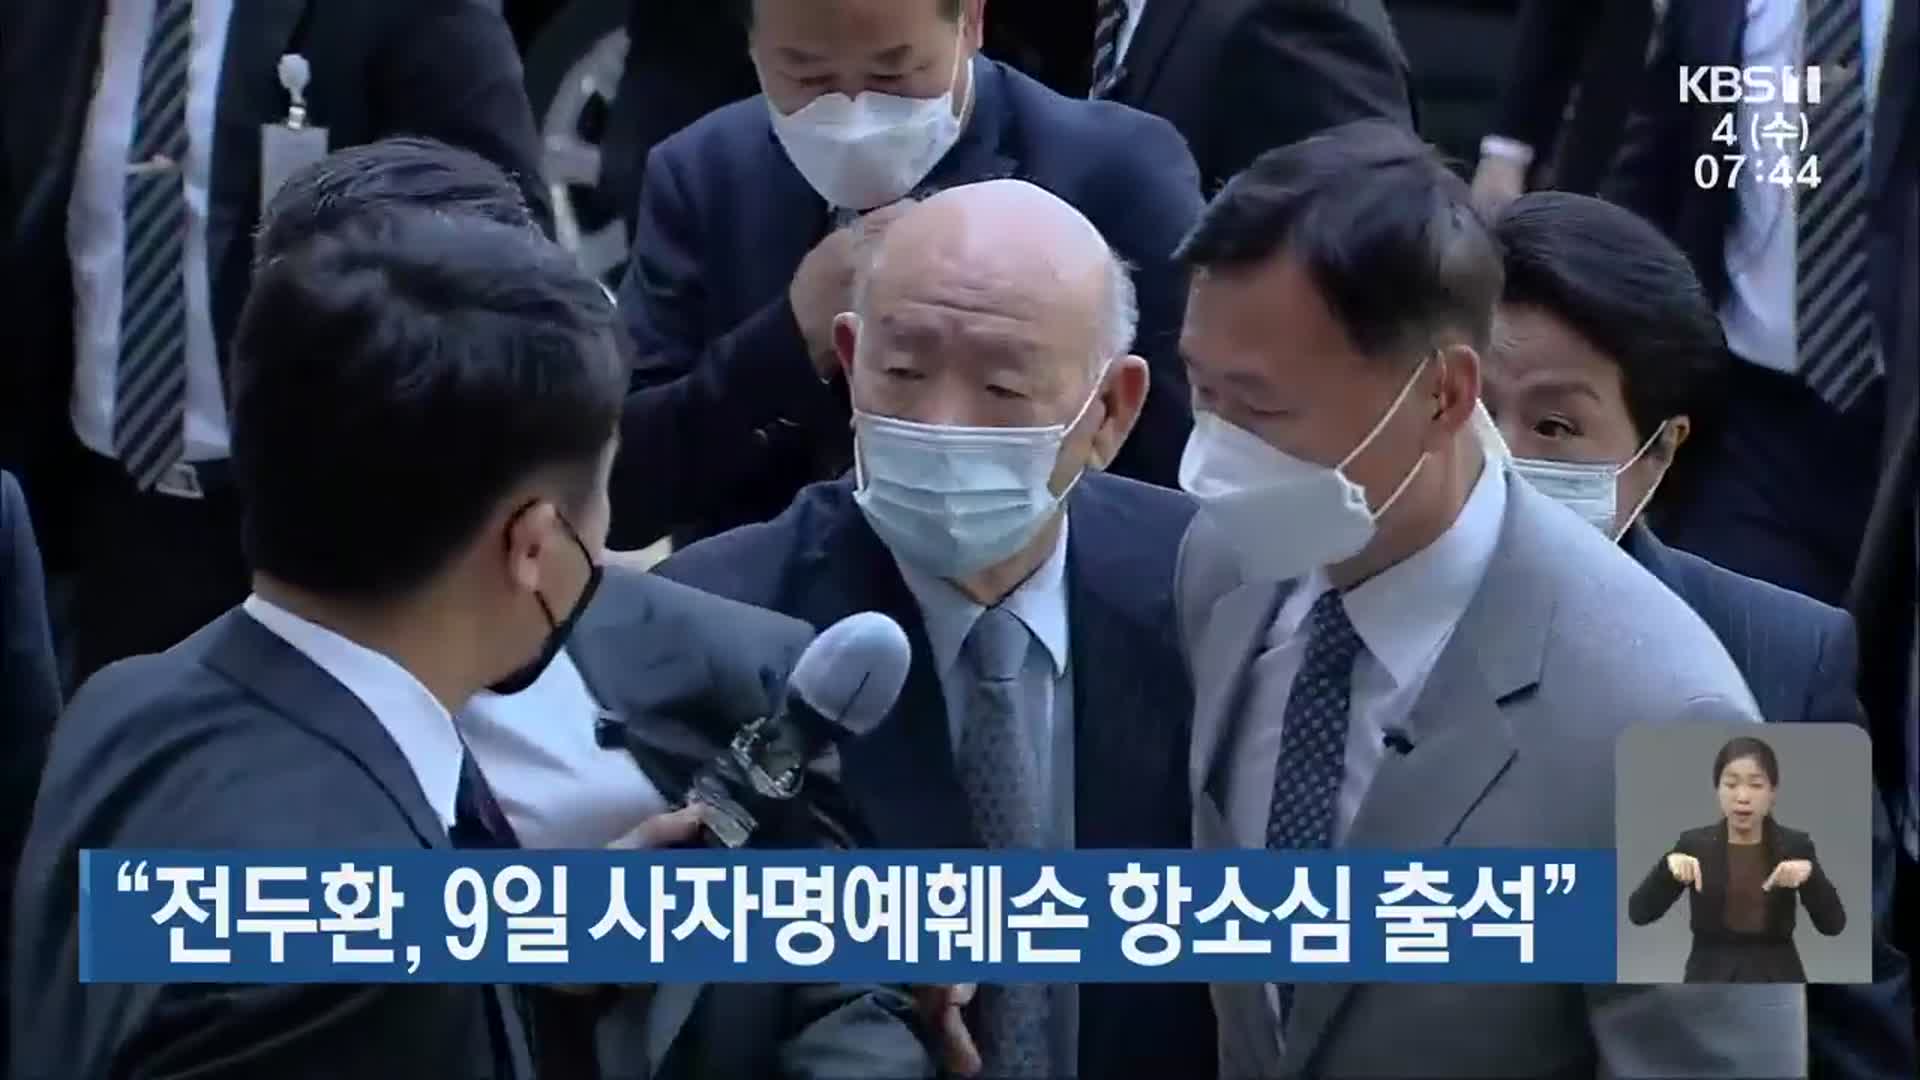 “전두환, 9일 사자명예훼손 항소심 출석”